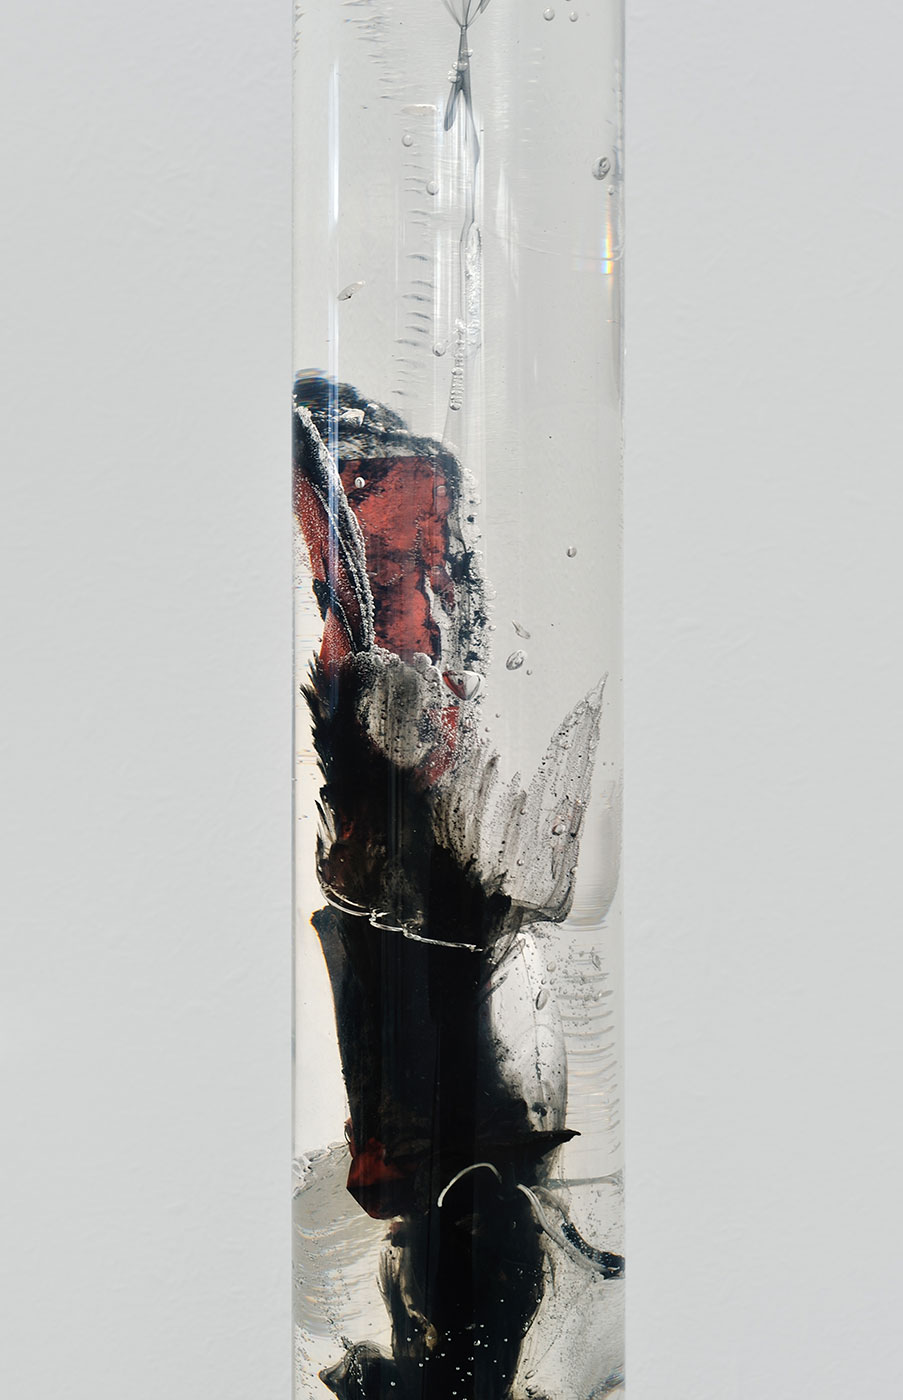 Vivien Roubaud - Feu d'artifice, gel de pétrole dégazé, combustion incomplète, tube PMMA (7), 2014